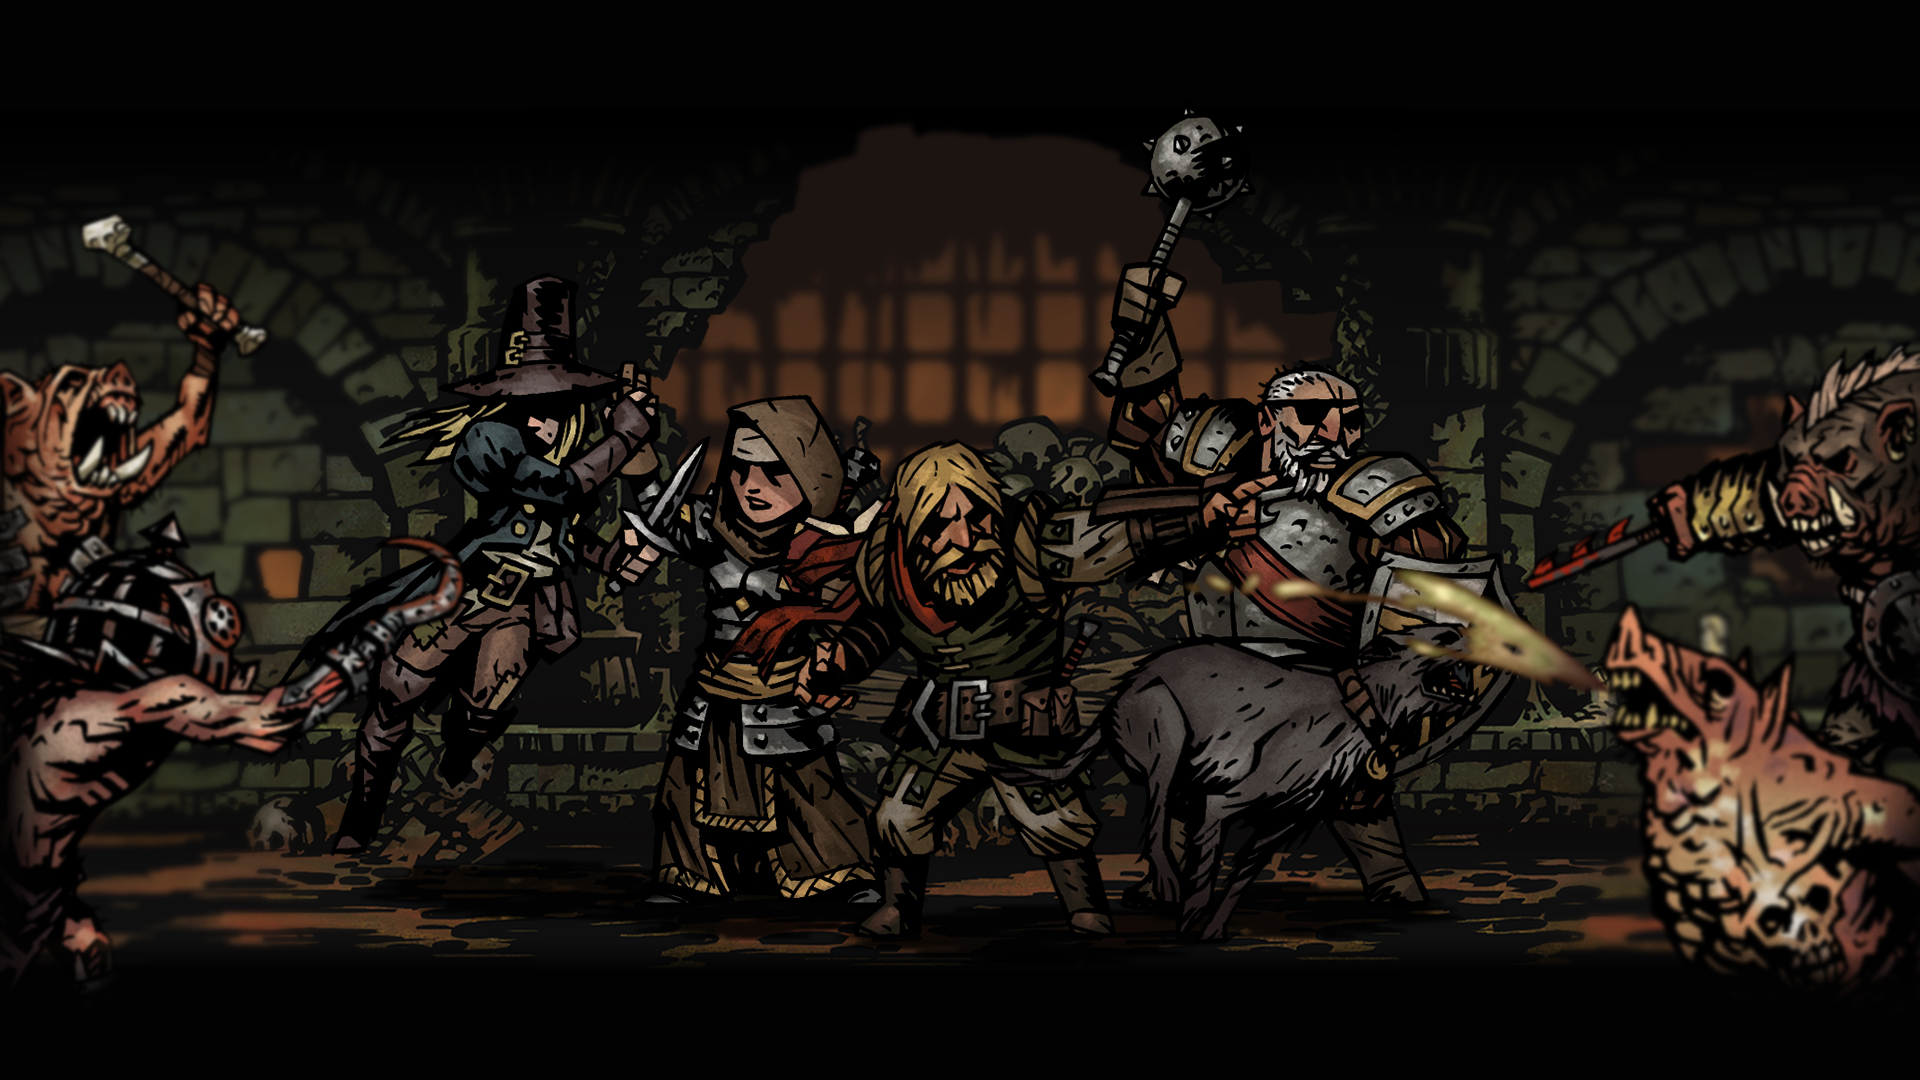 darkest dungeon wallpaper,action adventure game,pc game,darkness,screenshot,games